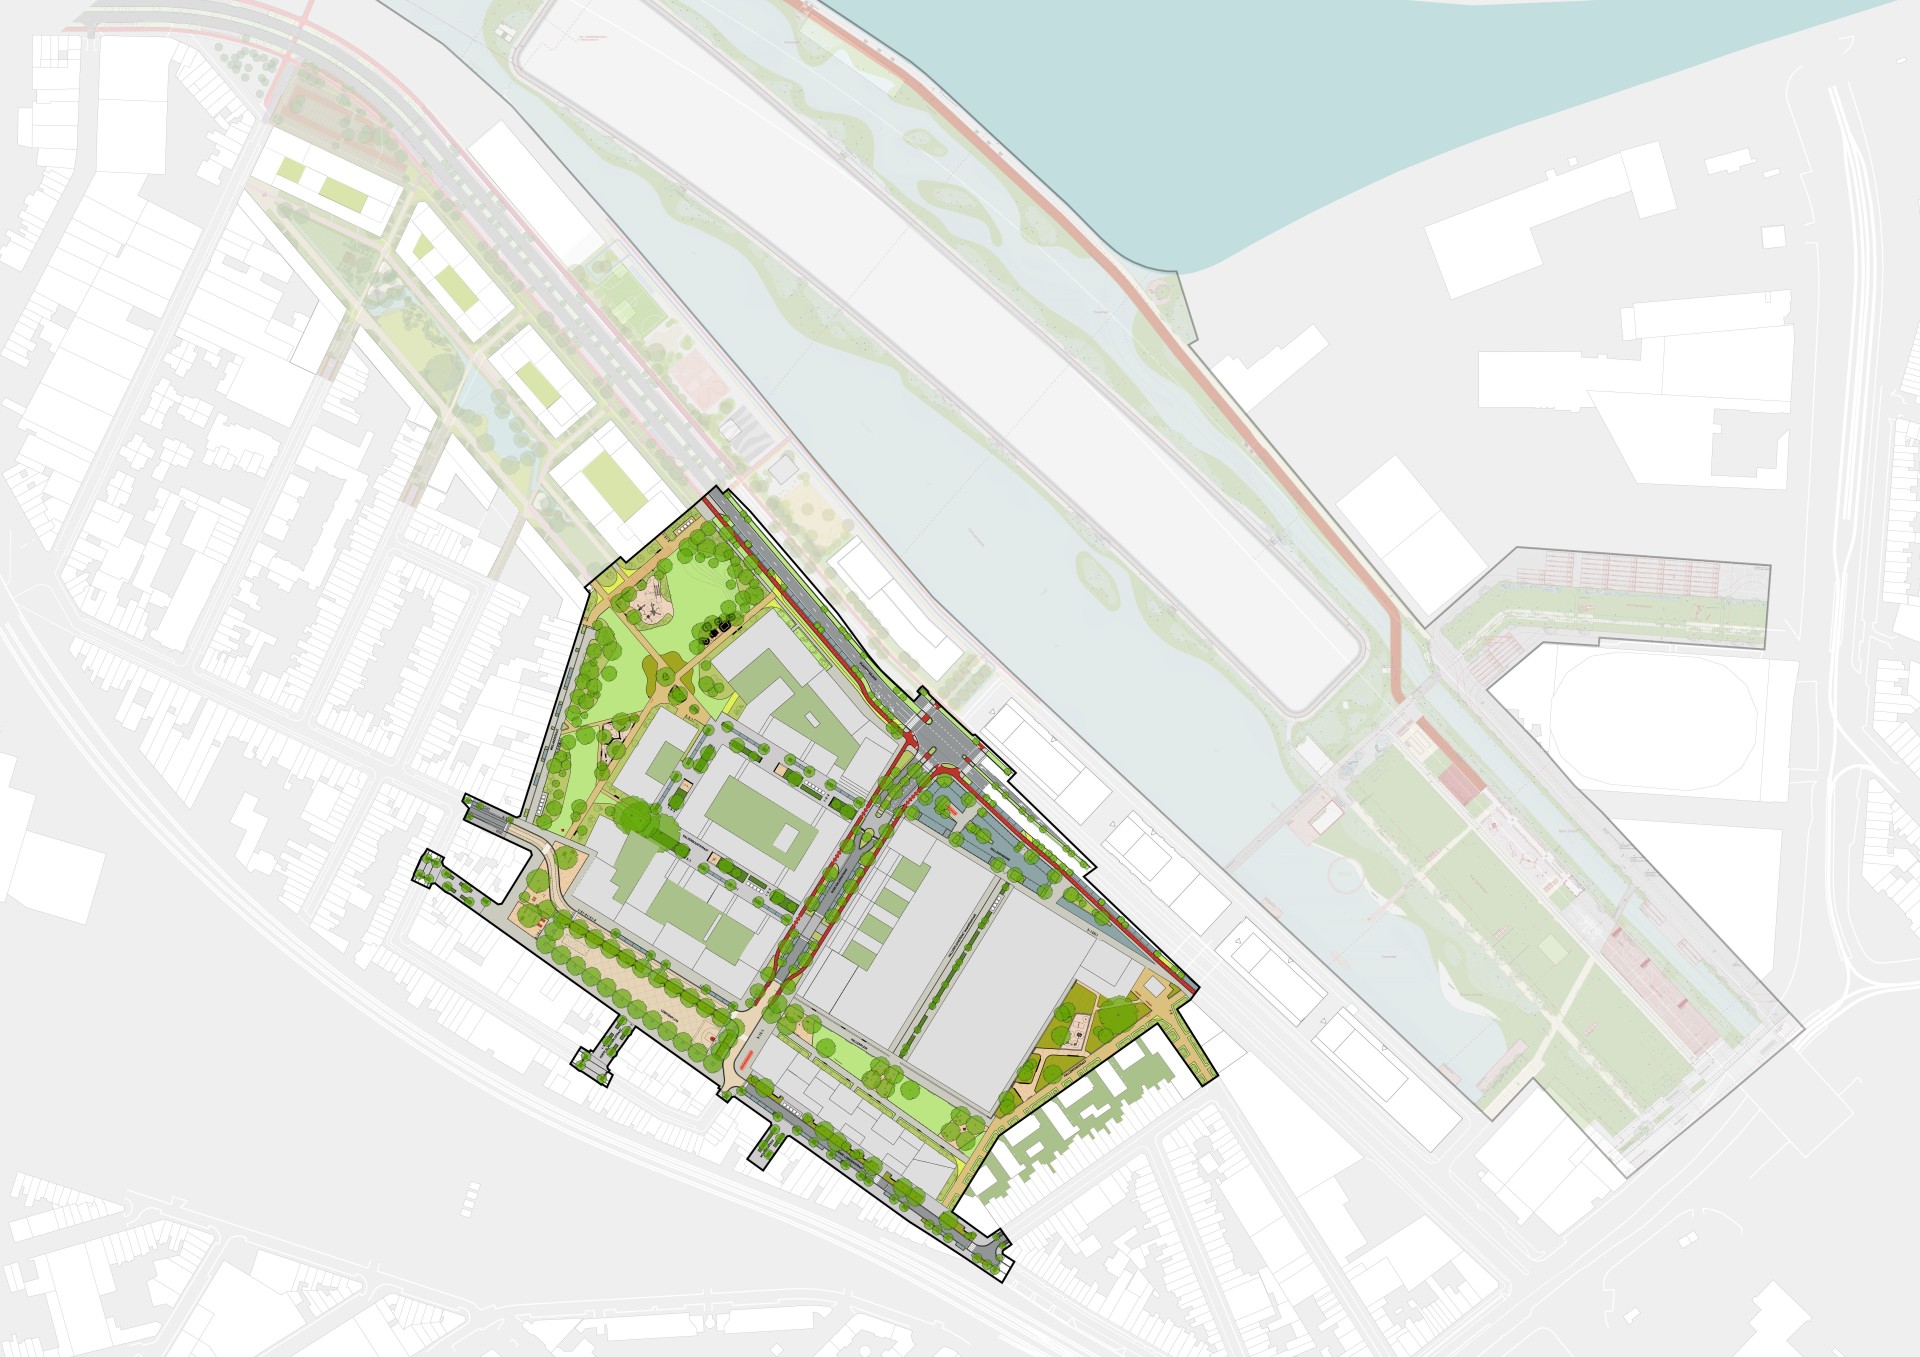 Overzichtsplan van het definitieve ontwerp van fase 1 van de publieke ruimte in de Slachthuiswijk 